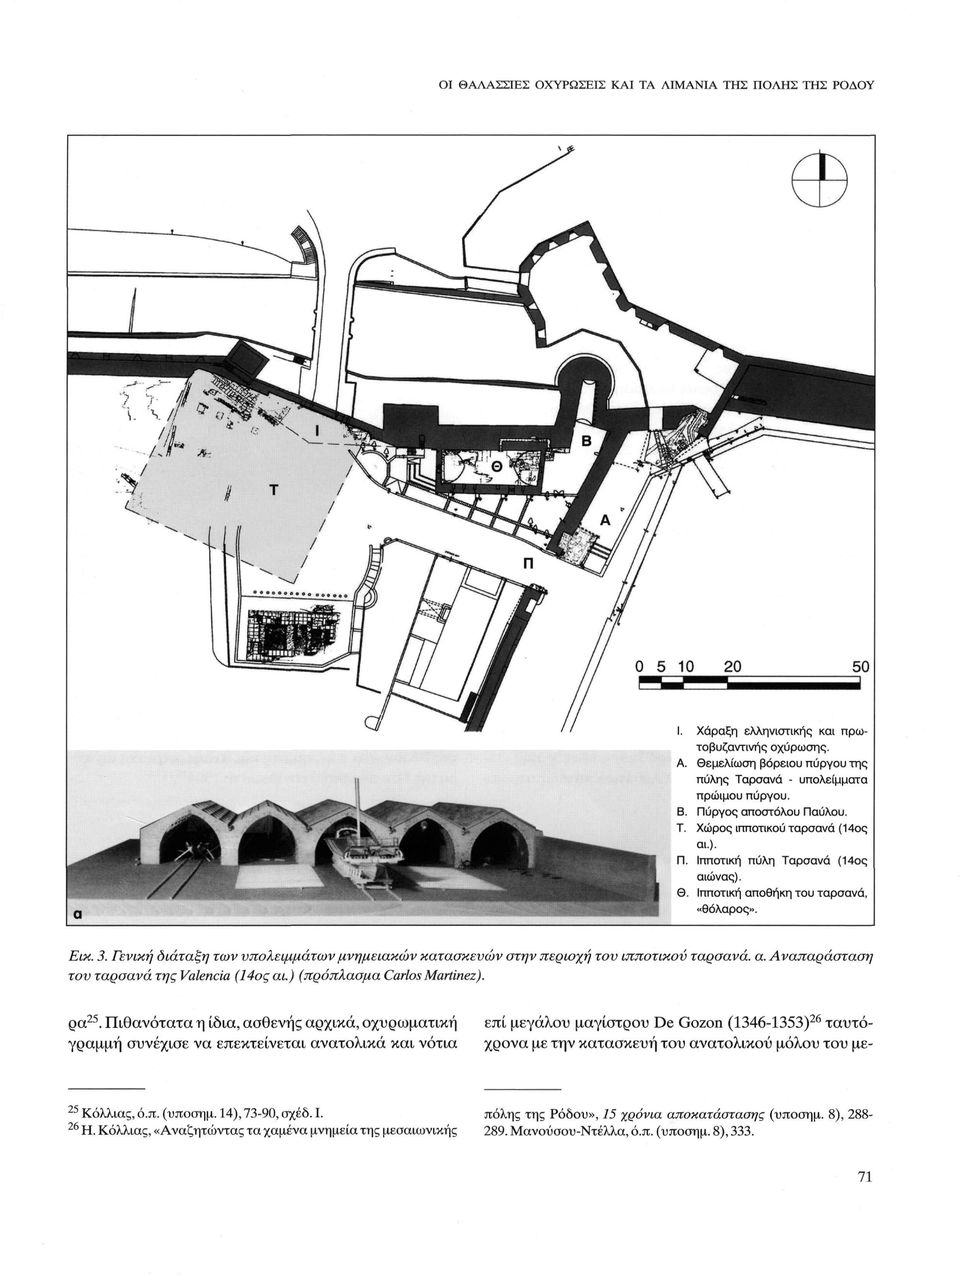 Γενική οιάταξη των υπολειμμάτων μνημειακών κατασκευών στην περιοχή του ιπποτικού ταρσανά, α. Αναπαράσταση του ταρσανά της Valencia (14ος αι.) (πρόπλασμα Carlos Martinez). ça 25.